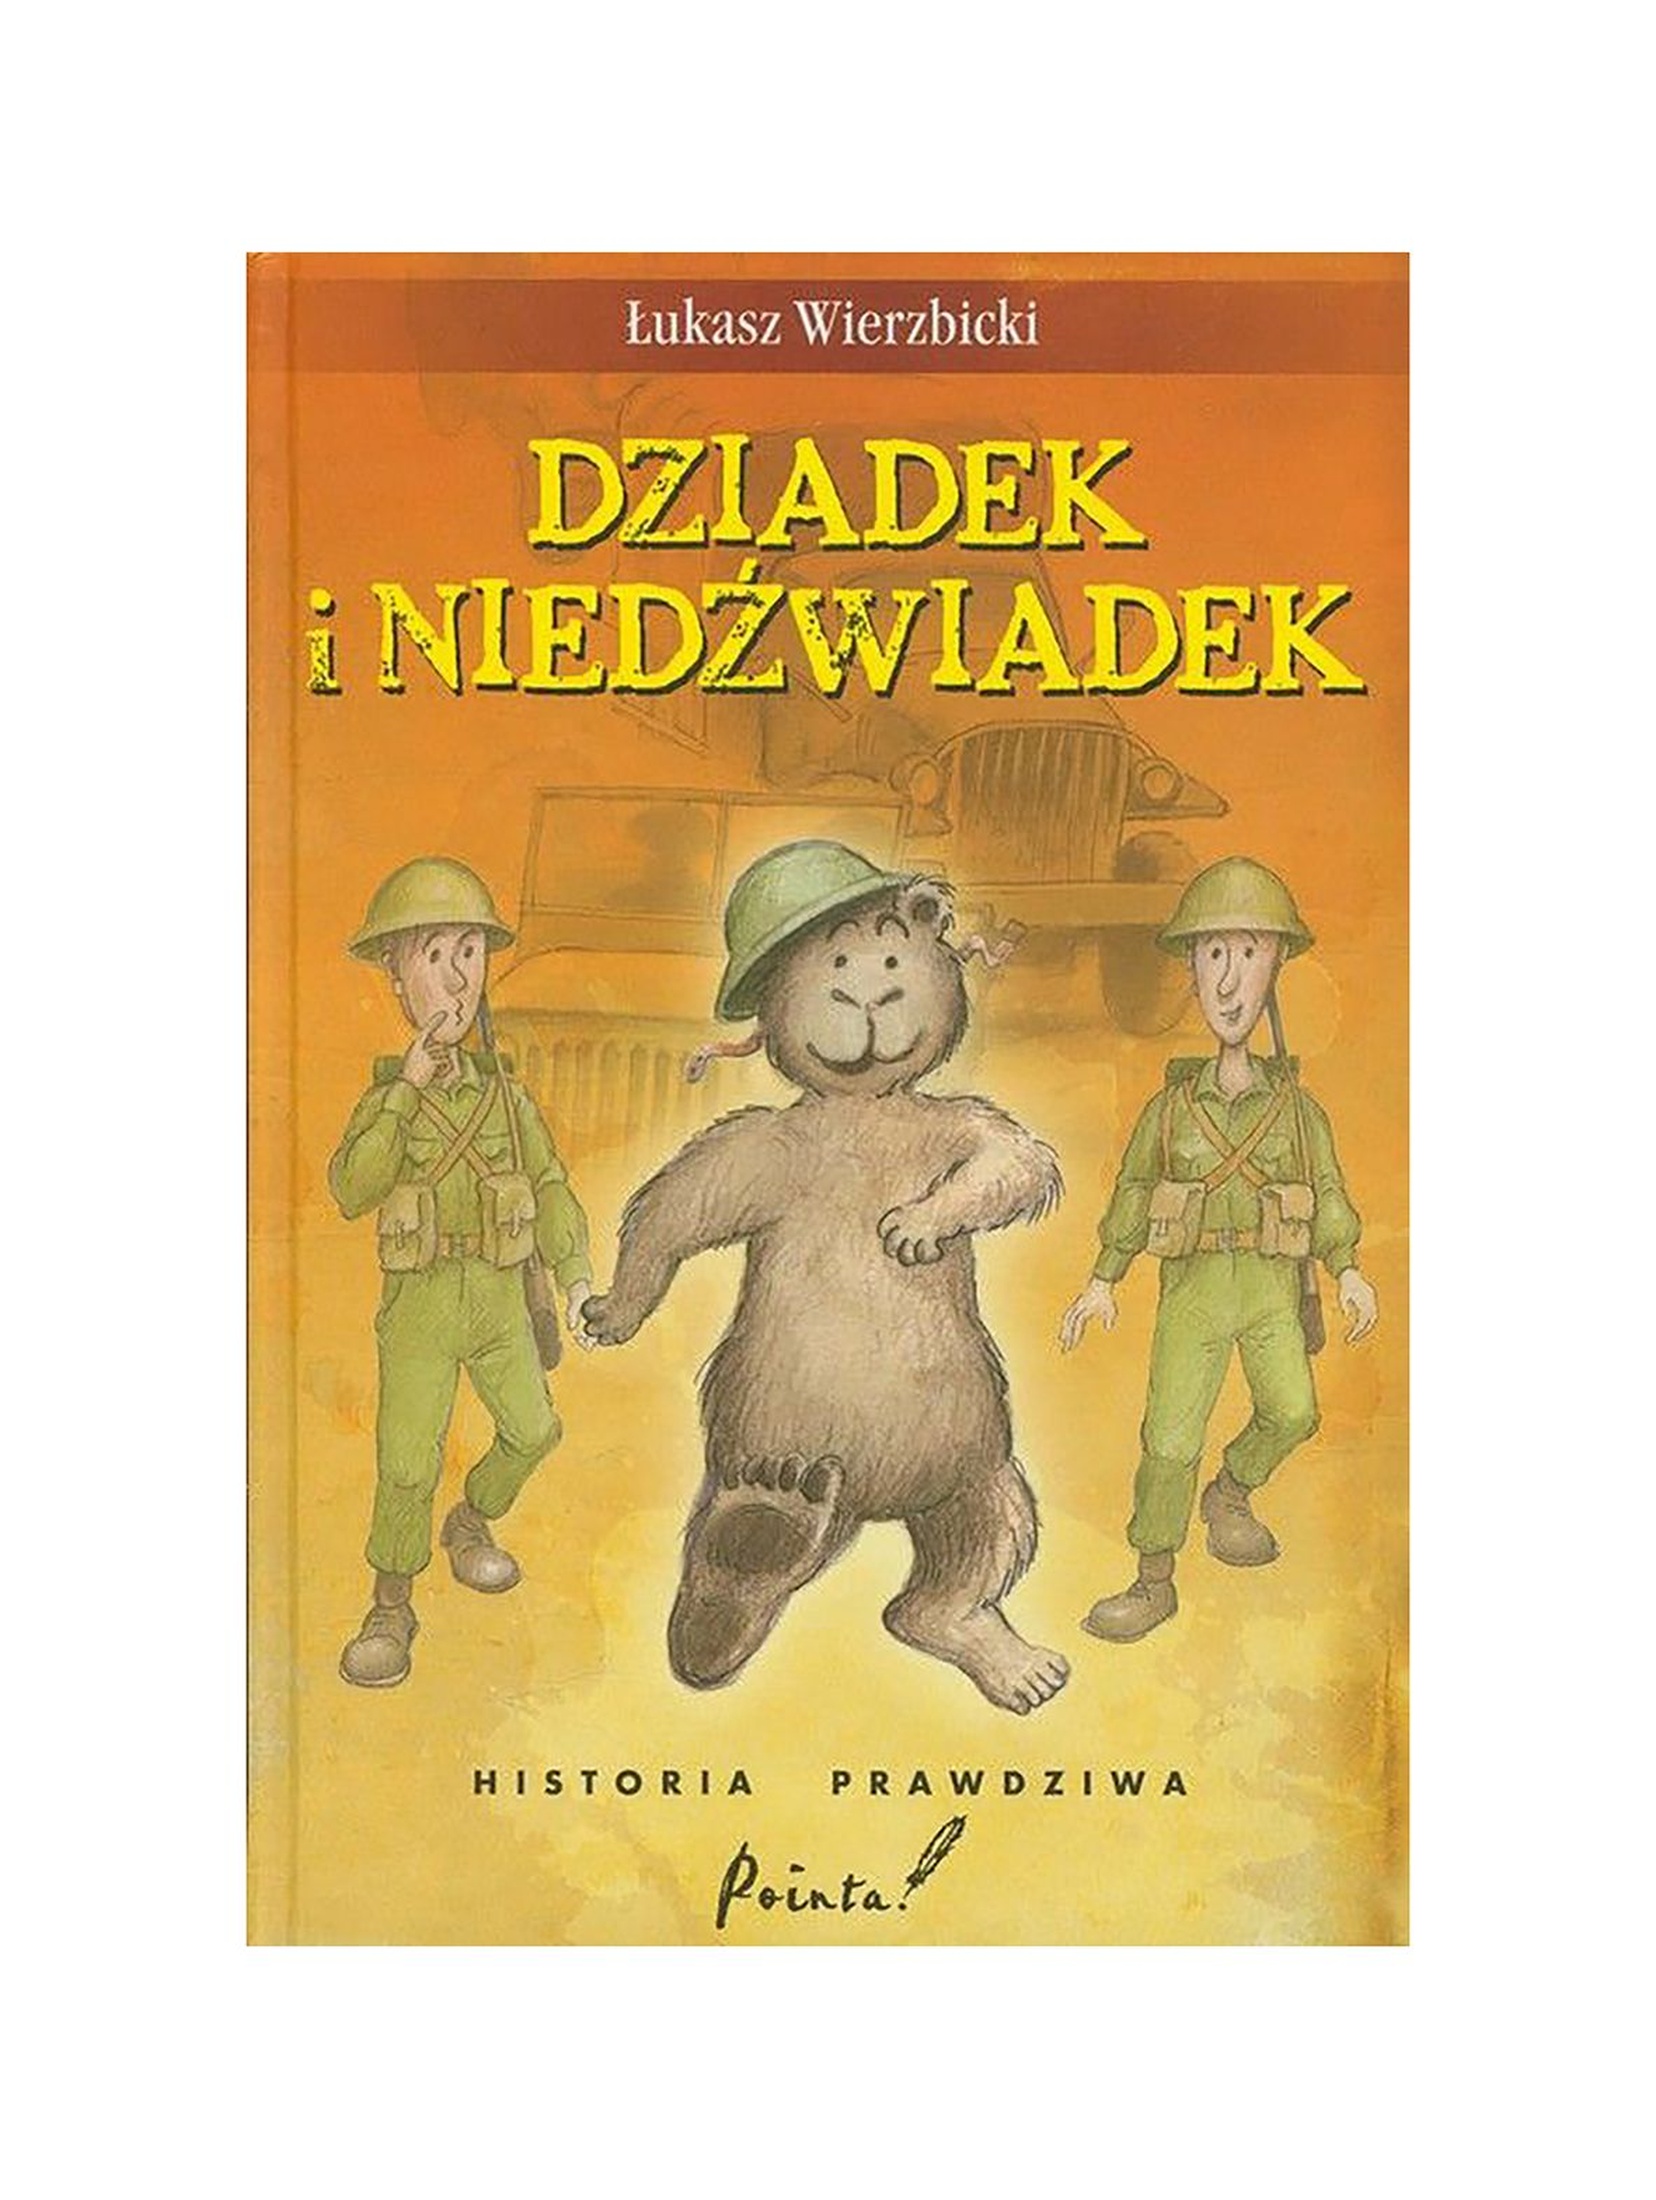 Dziadek i niedźwiadek - książka dla dzieci